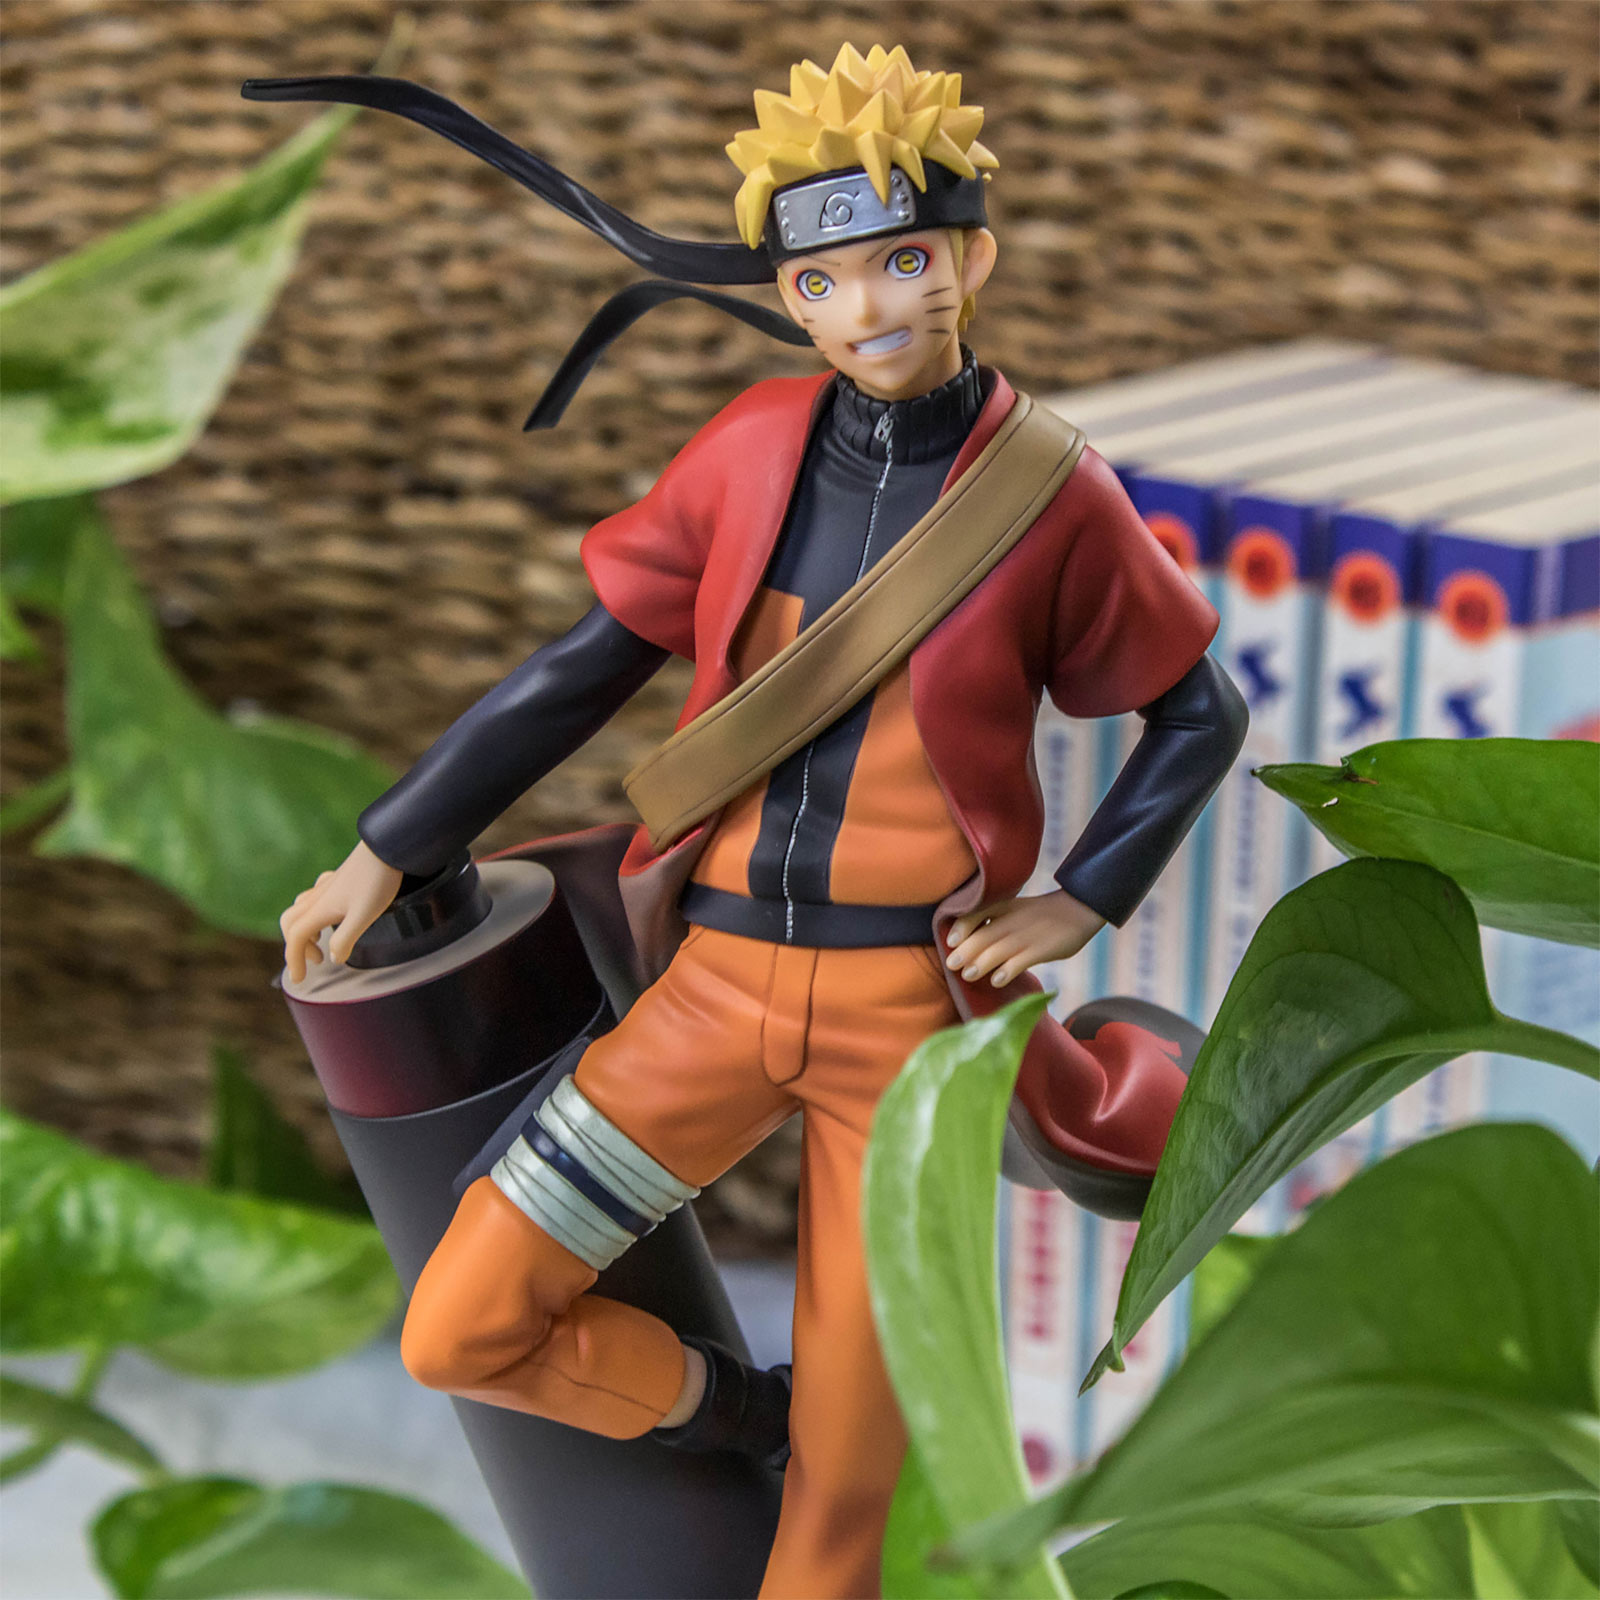 Naruto Shippuden - Naruto Uzumaki Sage Mode Standbeeld 1:8